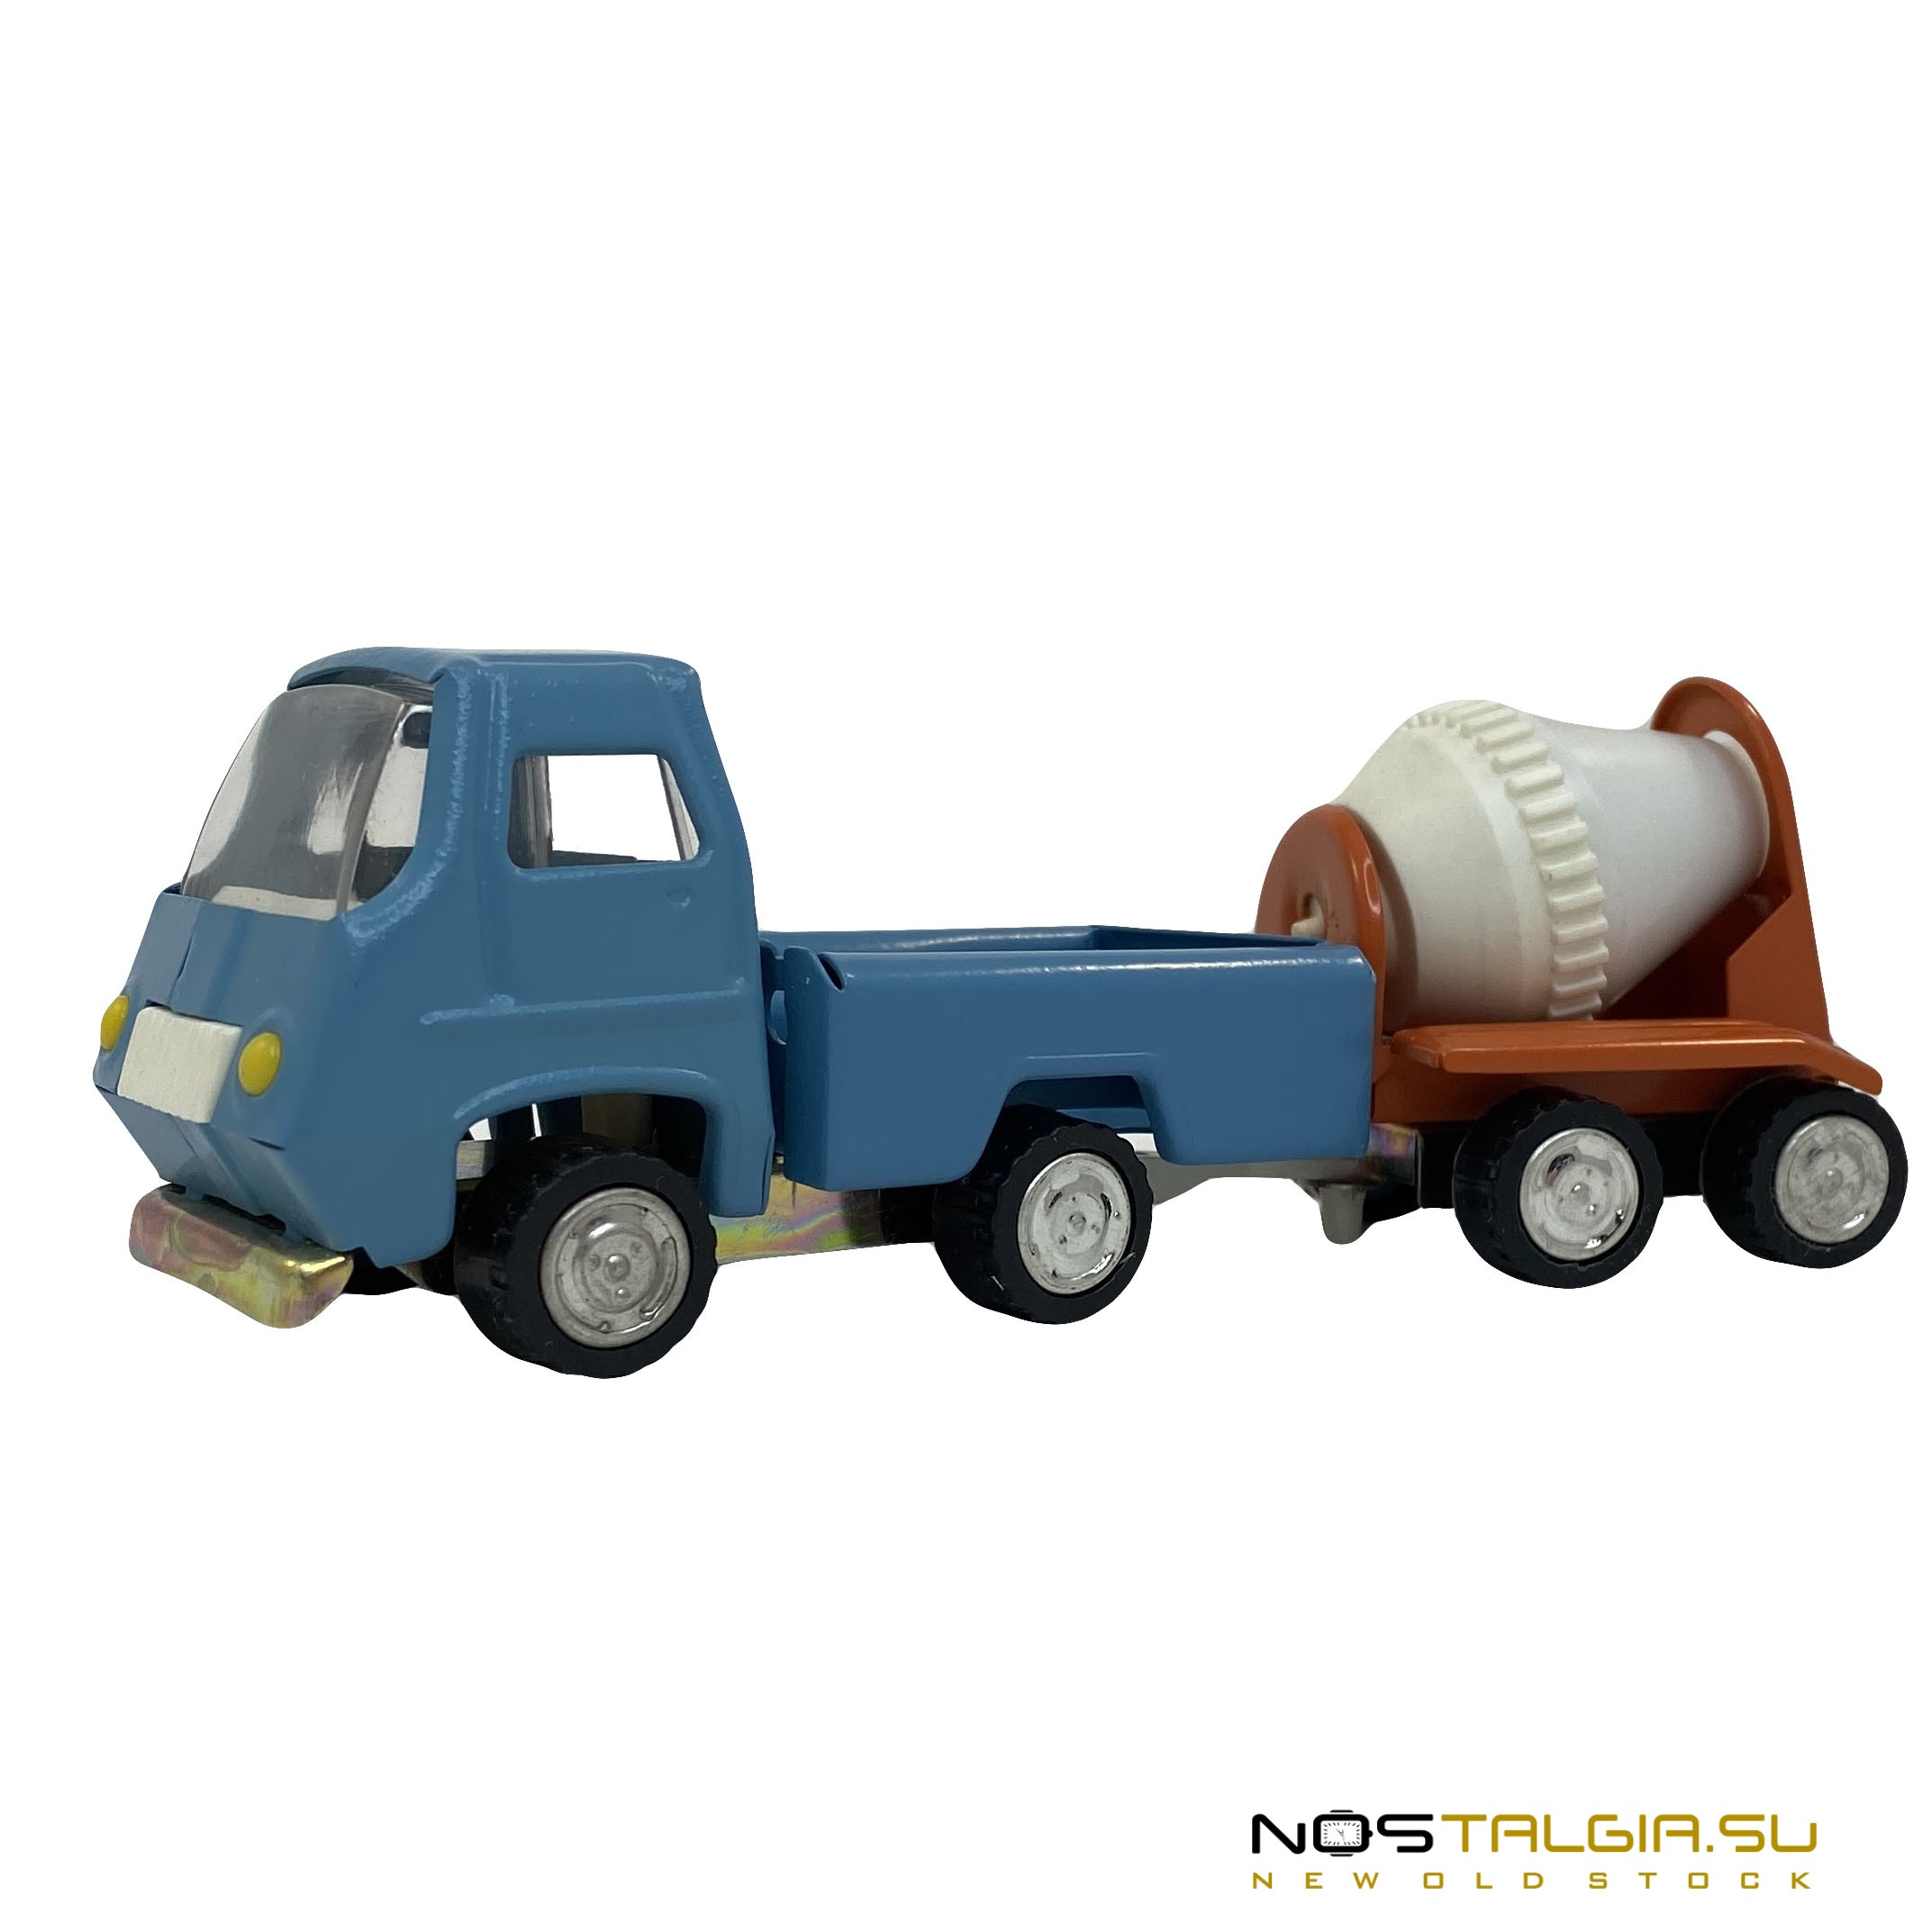 带有拖车"混凝土搅拌机"的汽车的比例模型，苏联，完美的条件